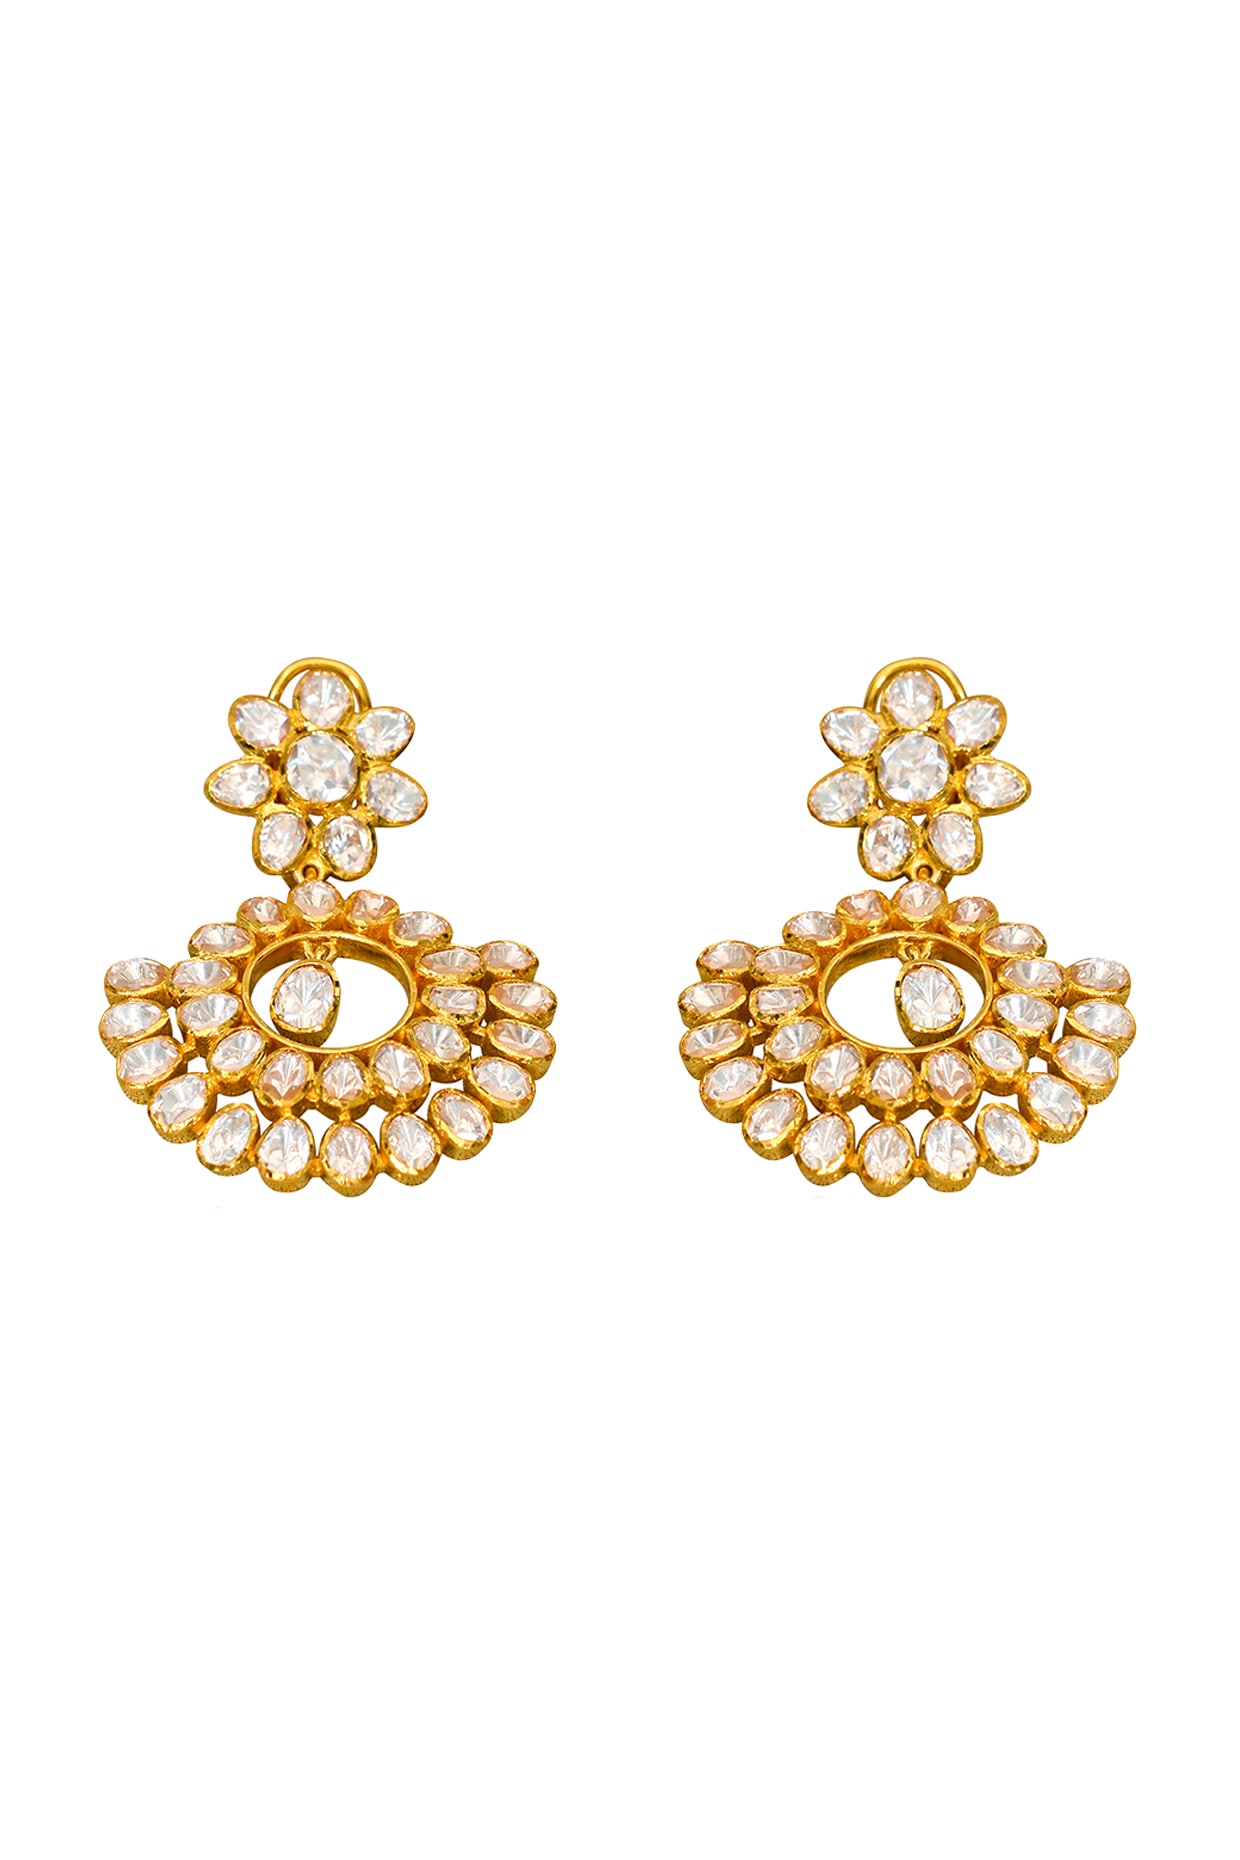 Latest Ruby Kemp Stone Chandabali Peacock Design Gold Earring ER2846